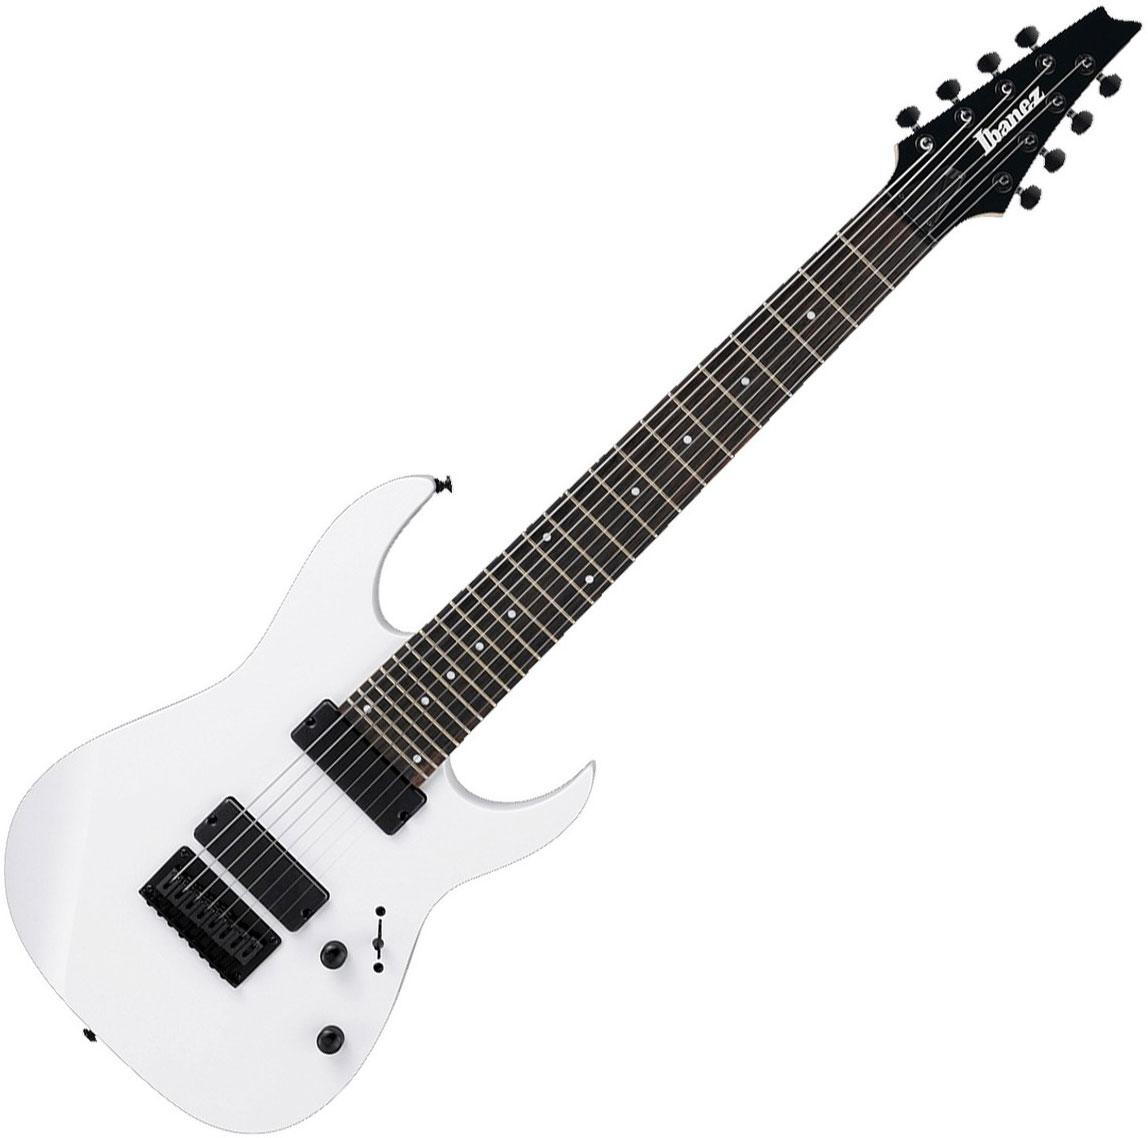 Ibañez - Guitarra Eléctrica RG de 8 cuerdas, Color: Blanca Mod.RG8-WH_71